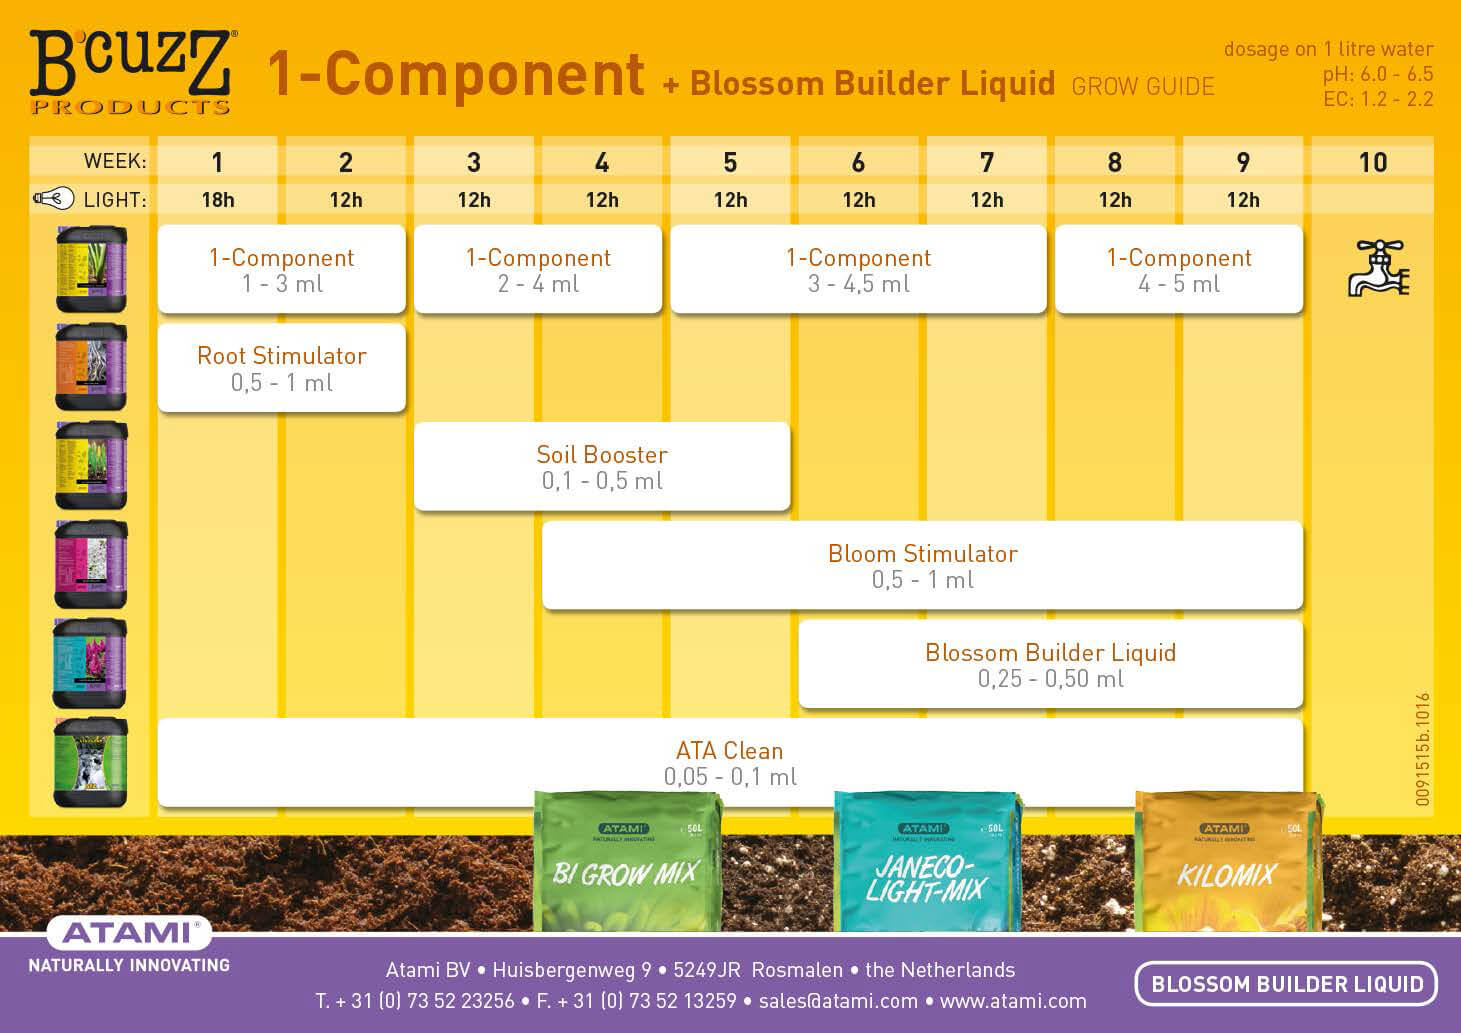 bcuzz-1-component-blossom-builder-liquid